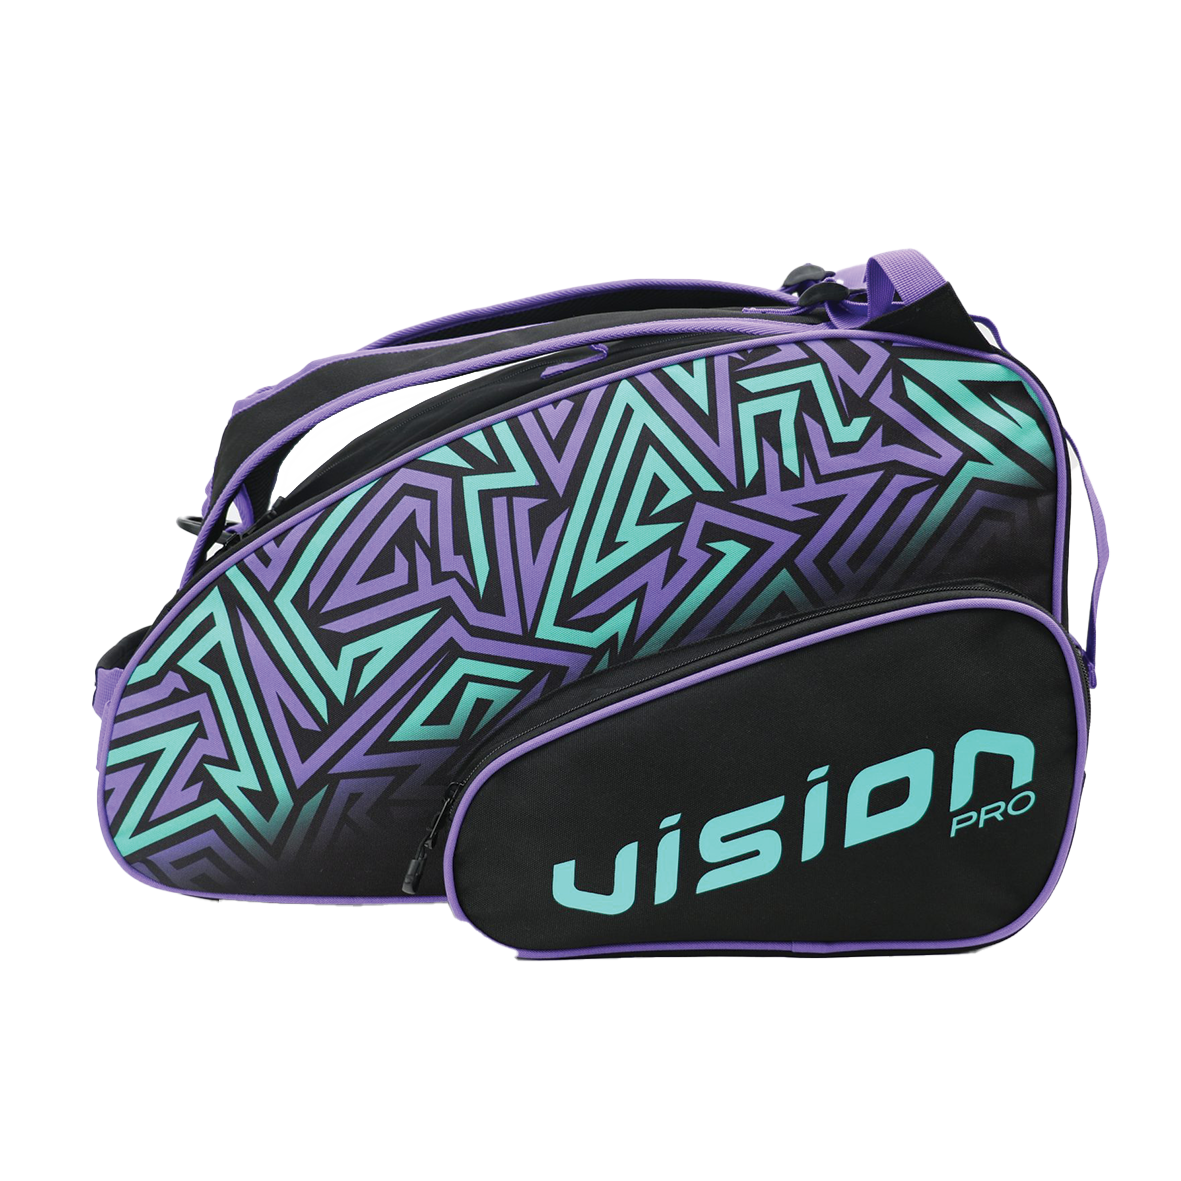 Vision Bag Ludwig